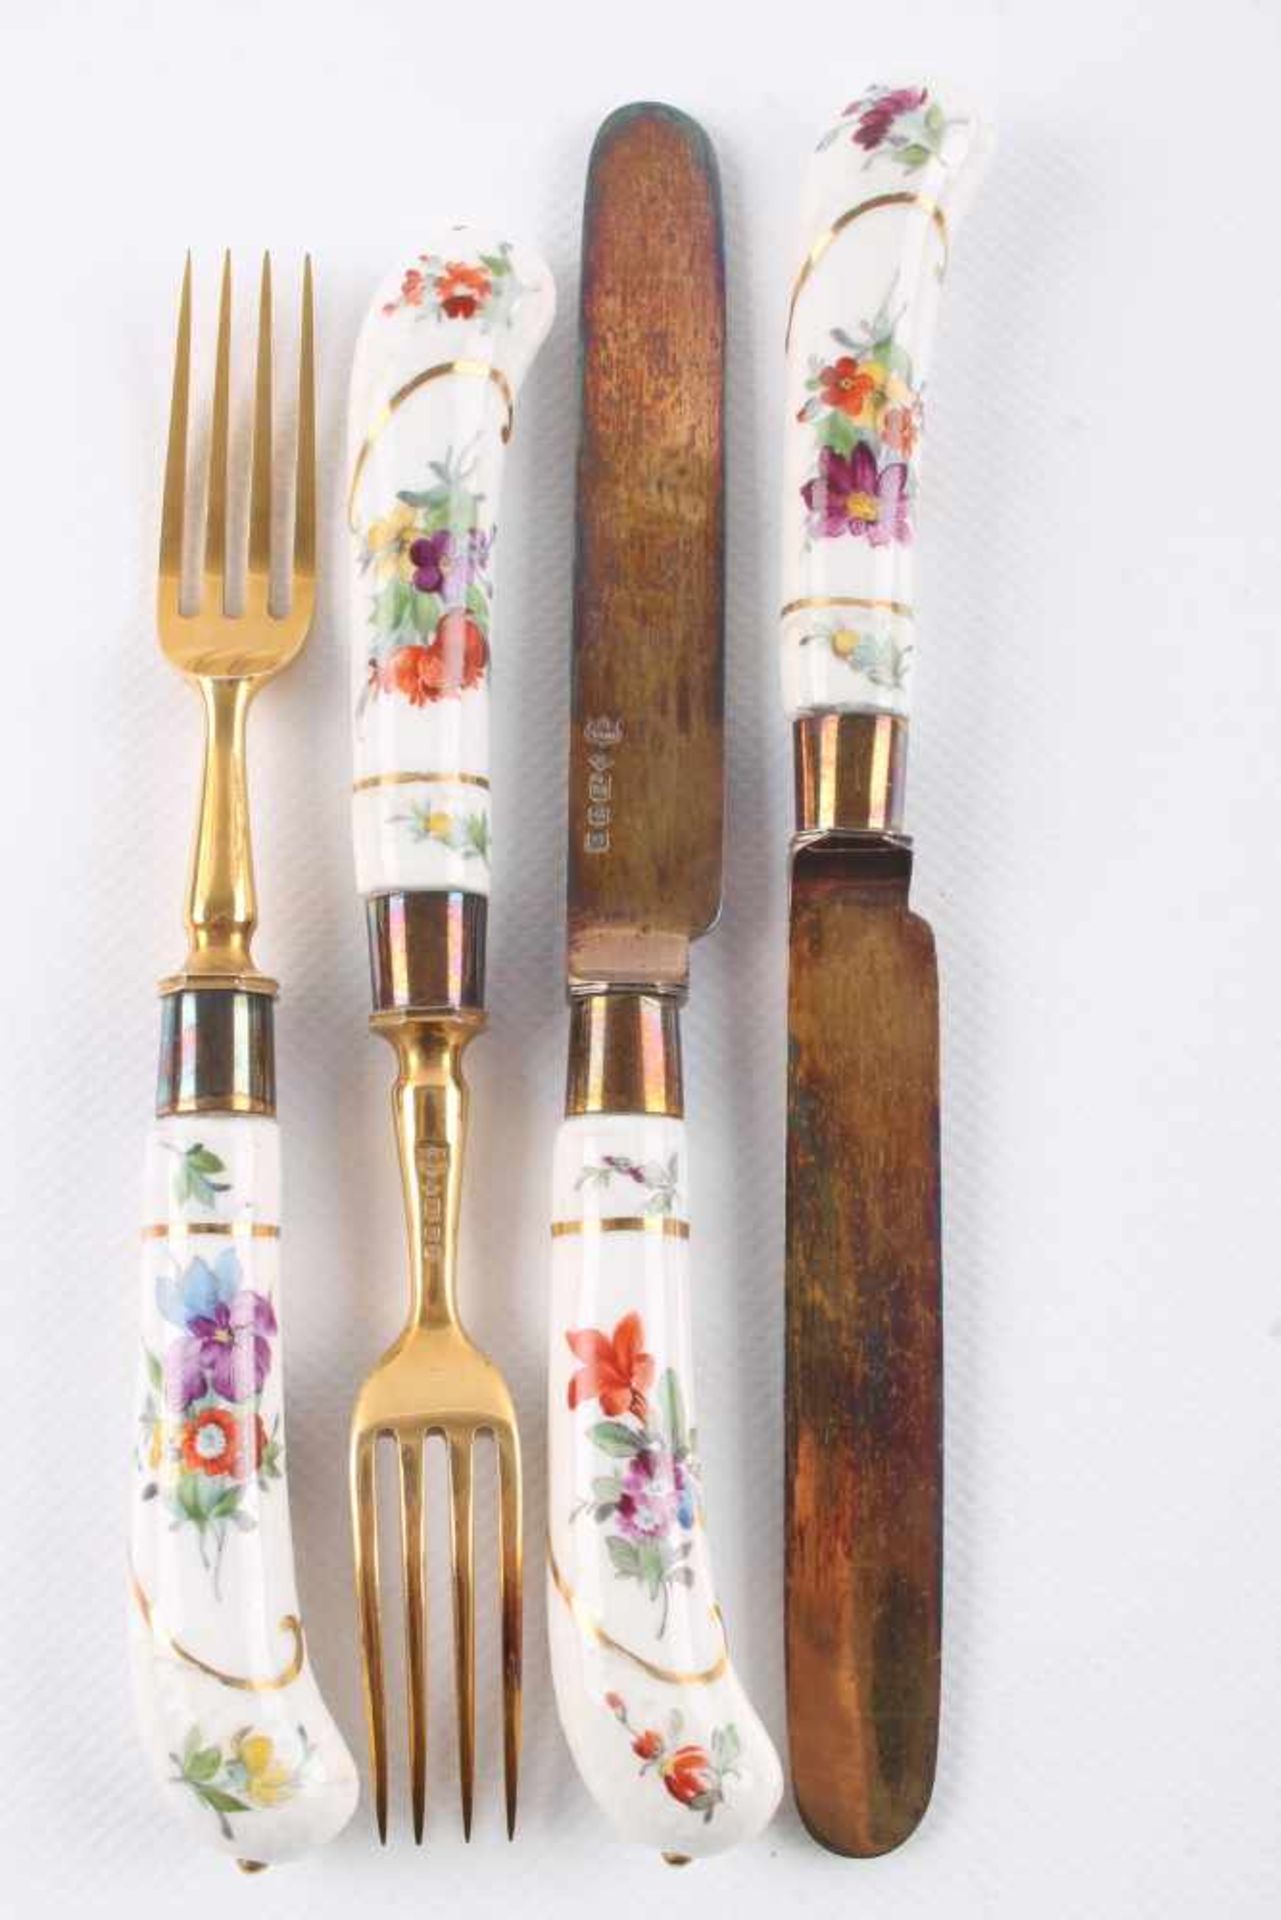 Meissen Besteck 18. Jahrhundert - sechs Messer und sechs Gabeln, 6 knifes and 6 forks 18th cenutry, - Bild 2 aus 3